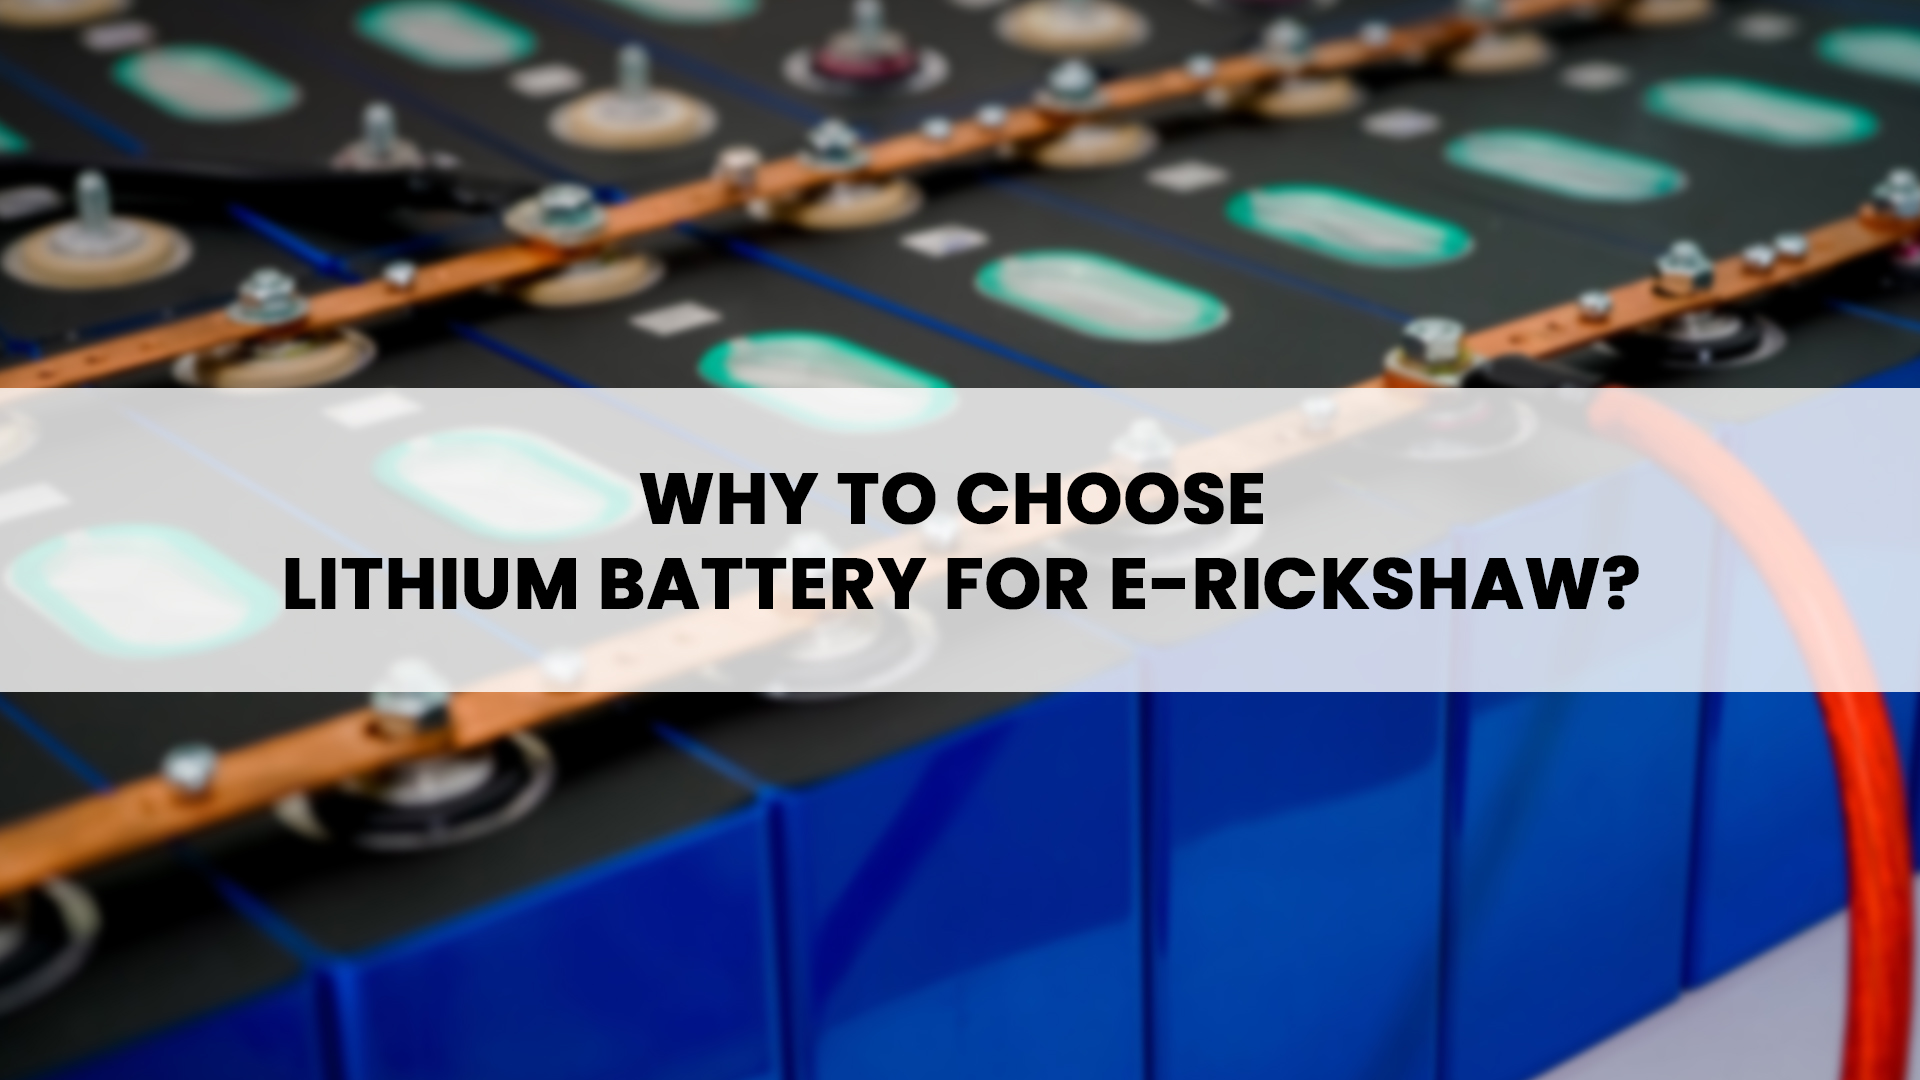 Lithium battery for E-rickshaw